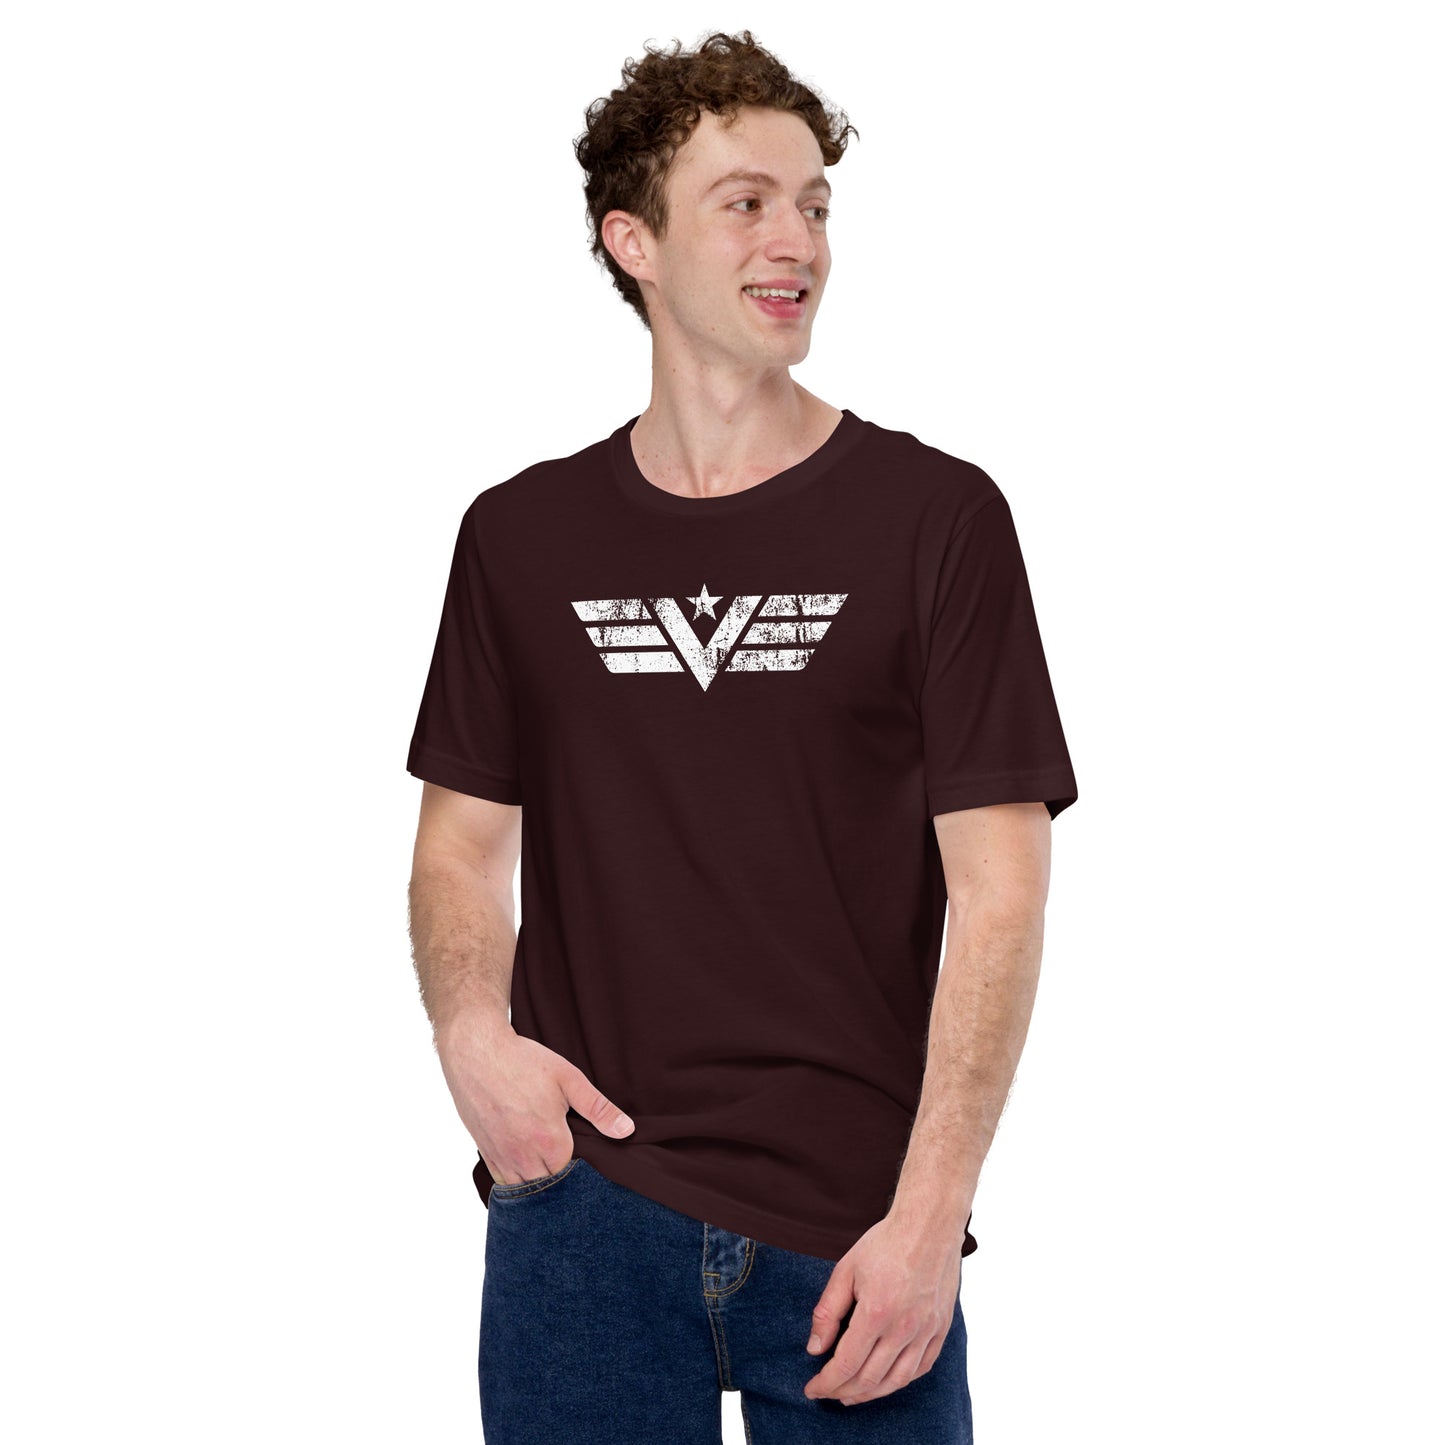 V-Wings T-Shirt